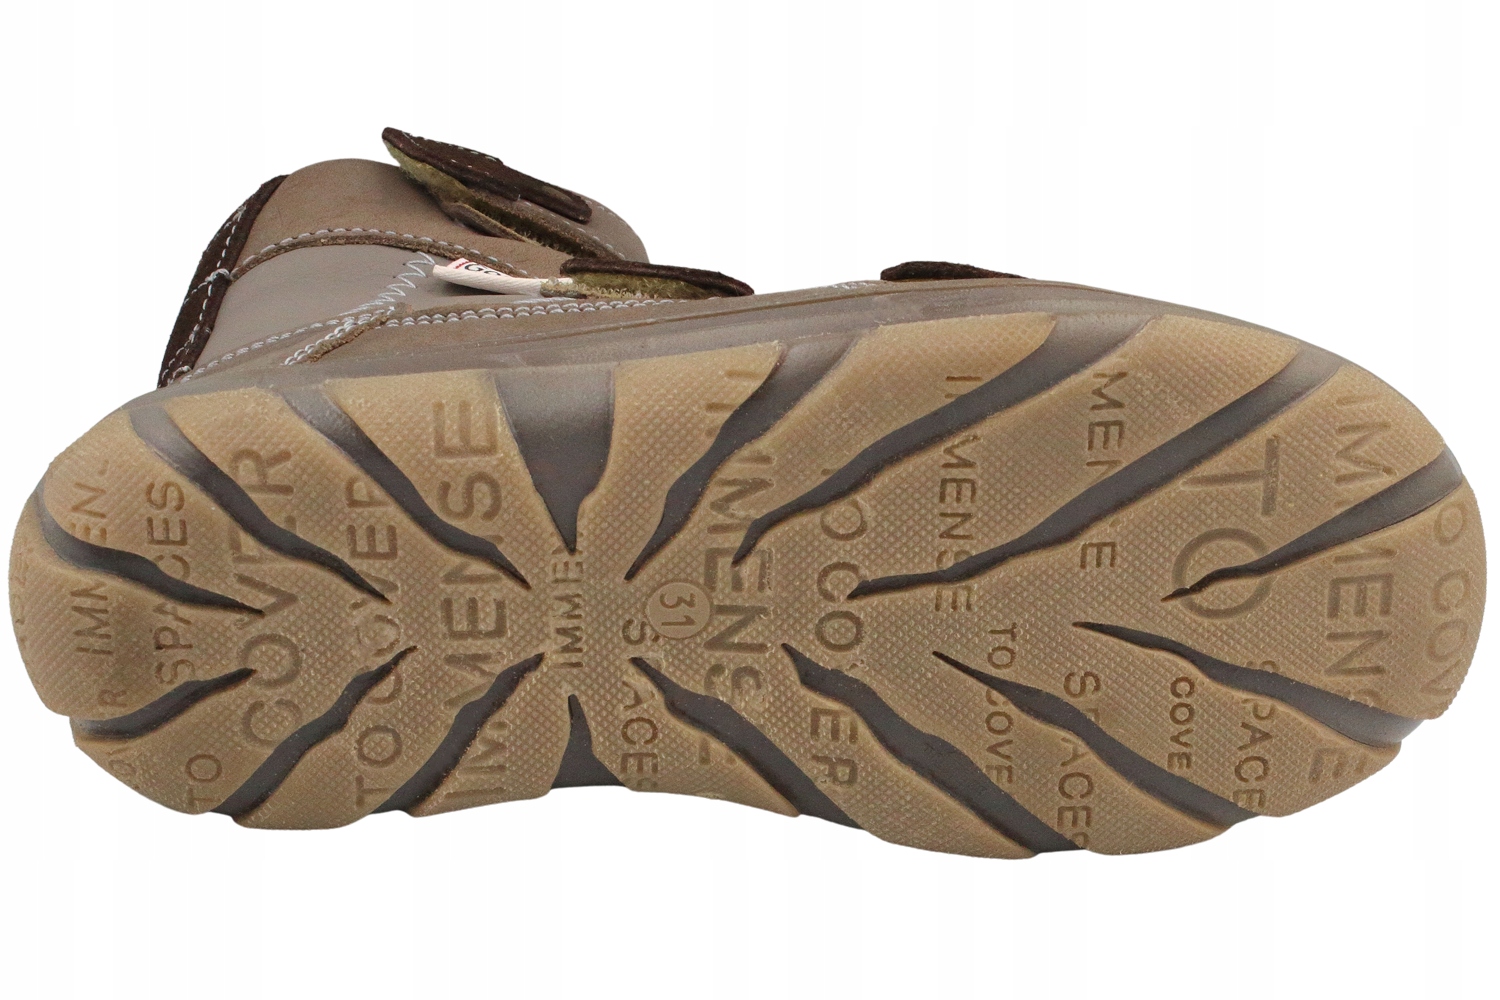 Сапоги сапоги антилопа кожаные для зимы R35 размер 35